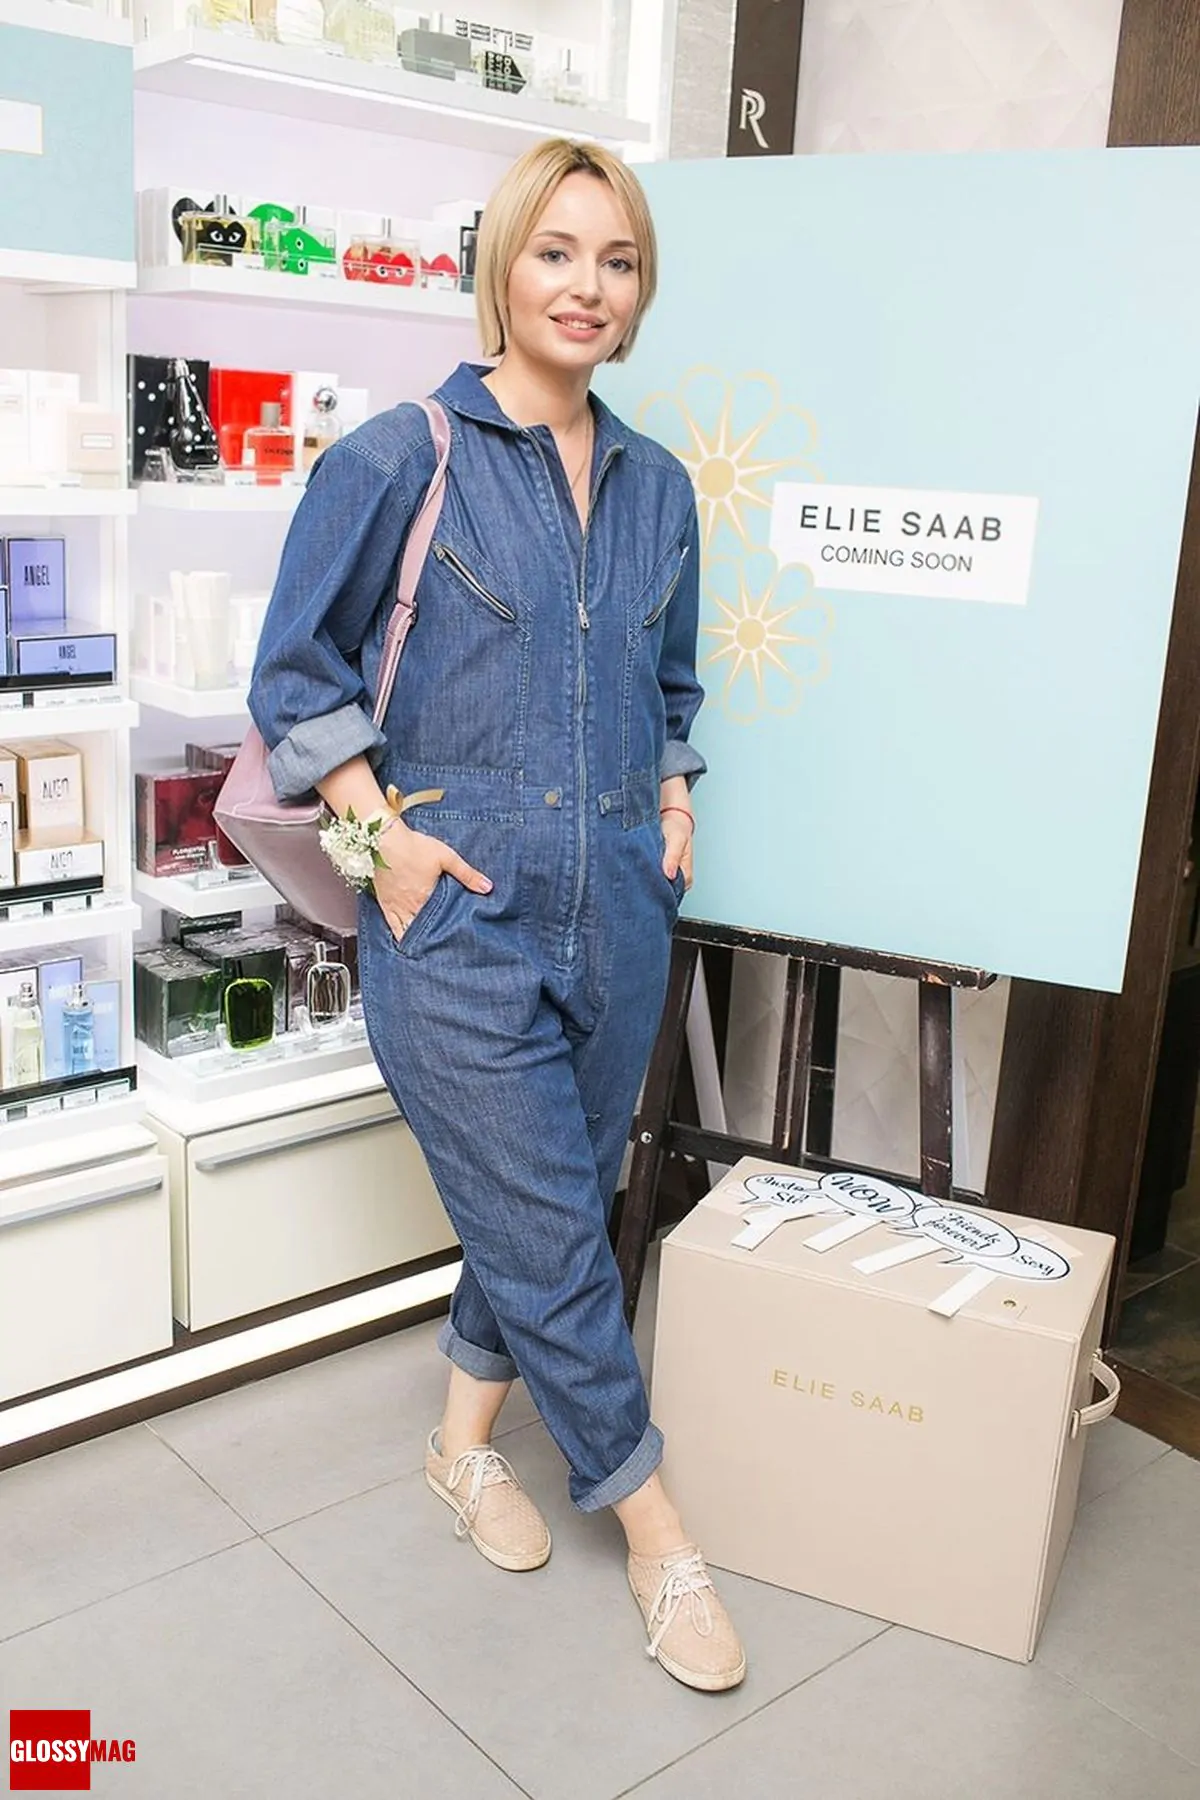 Поля Полякова в корнере Elie Saab на закрытом мероприятии Beauty CHOICE в Rivoli Perfumery в ТГ Модный сезон, 28 июня 2017 г.